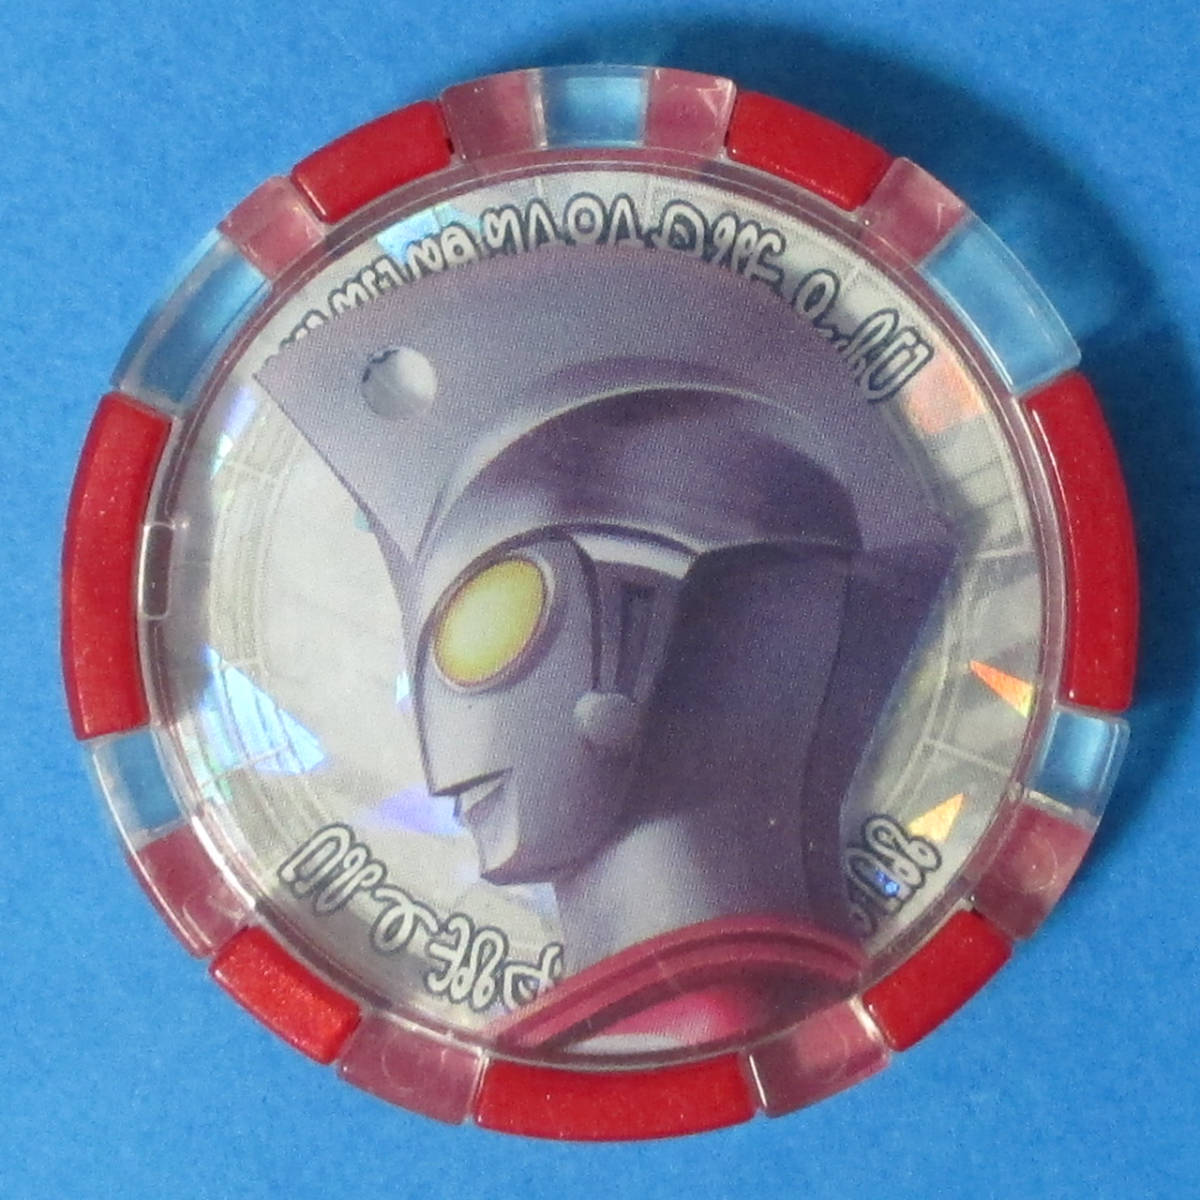 DX Ultraman Ace medal single goods / Ultraman Z DX Z holder accessory / Ultra medal Ultraman Ace Ultraman Z